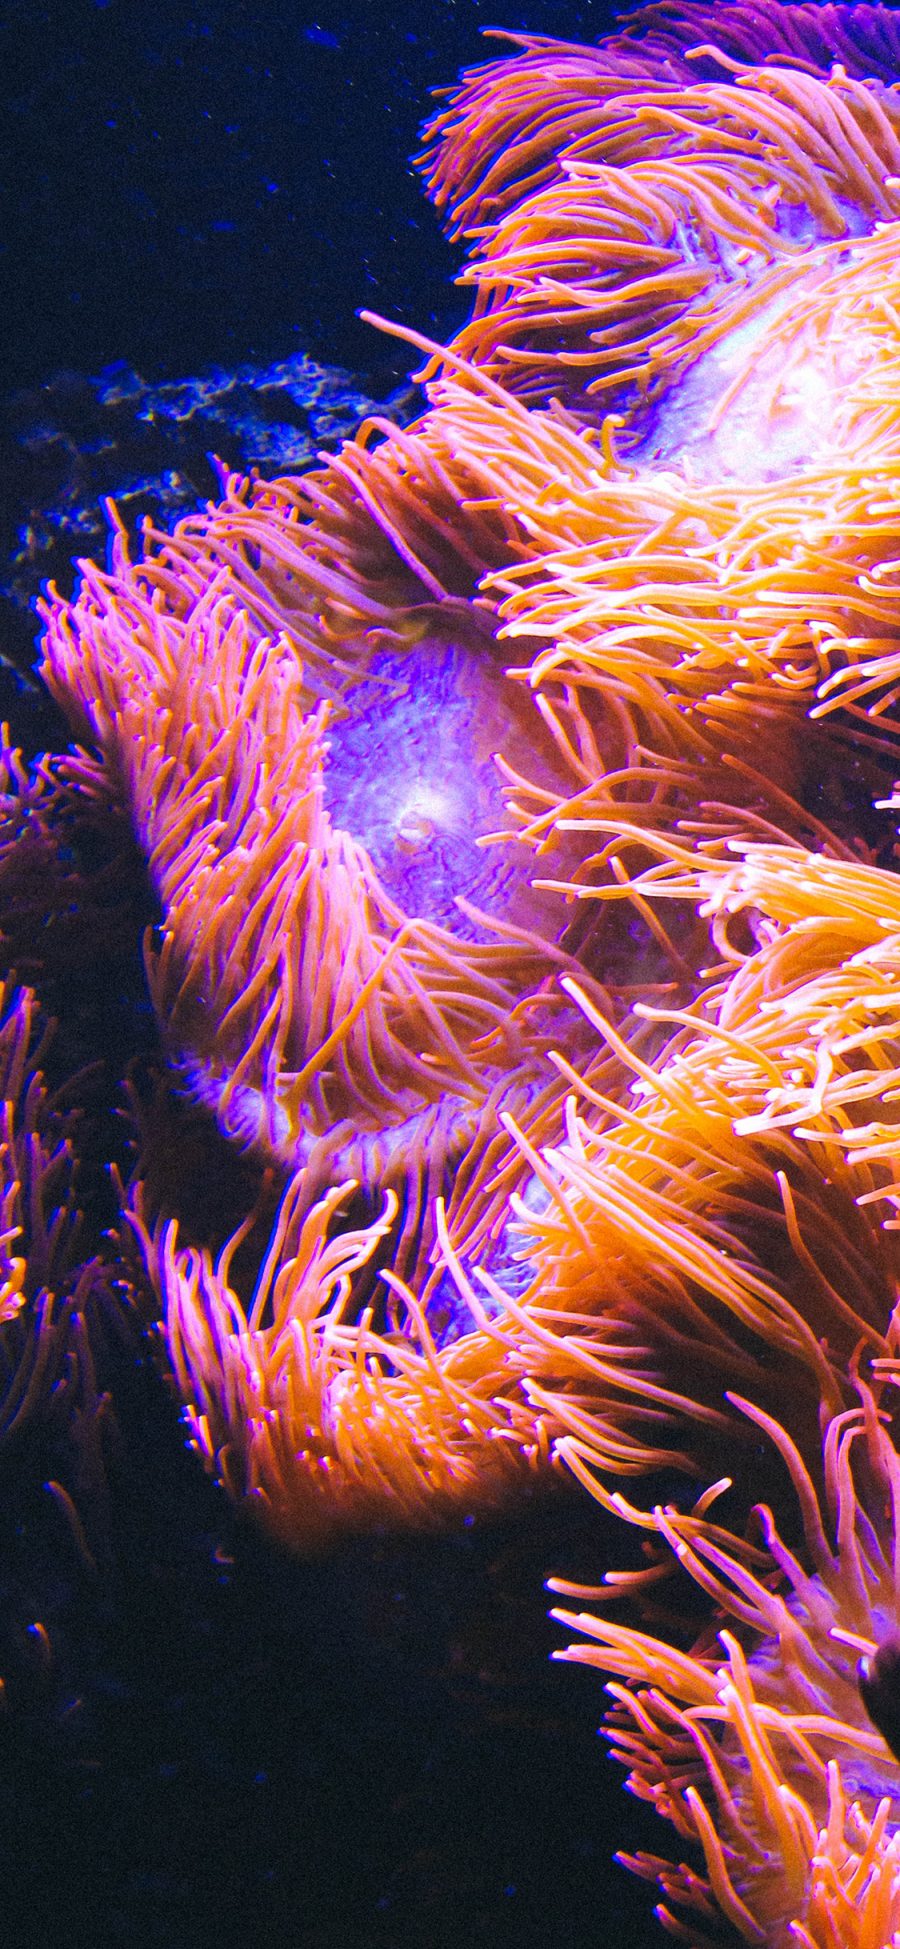 [2436×1125]珊瑚虫 珊瑚 海底  色彩 随波浮动 苹果手机壁纸图片